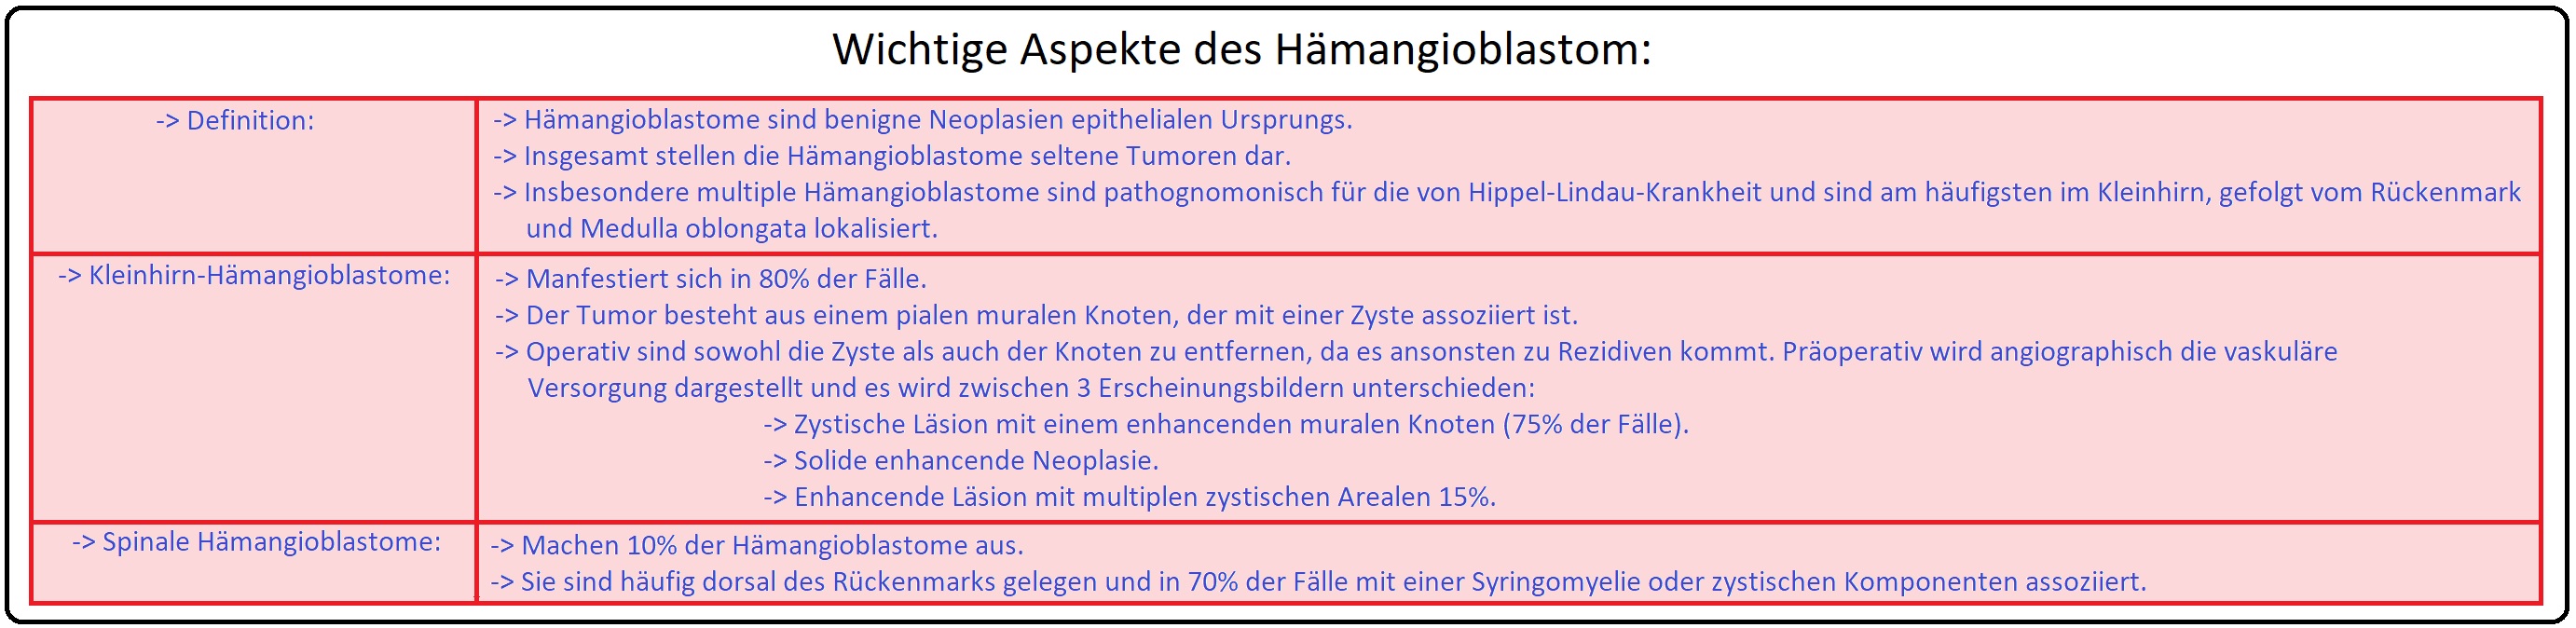 082 Wichtige Aspekte des Hämangioblastom